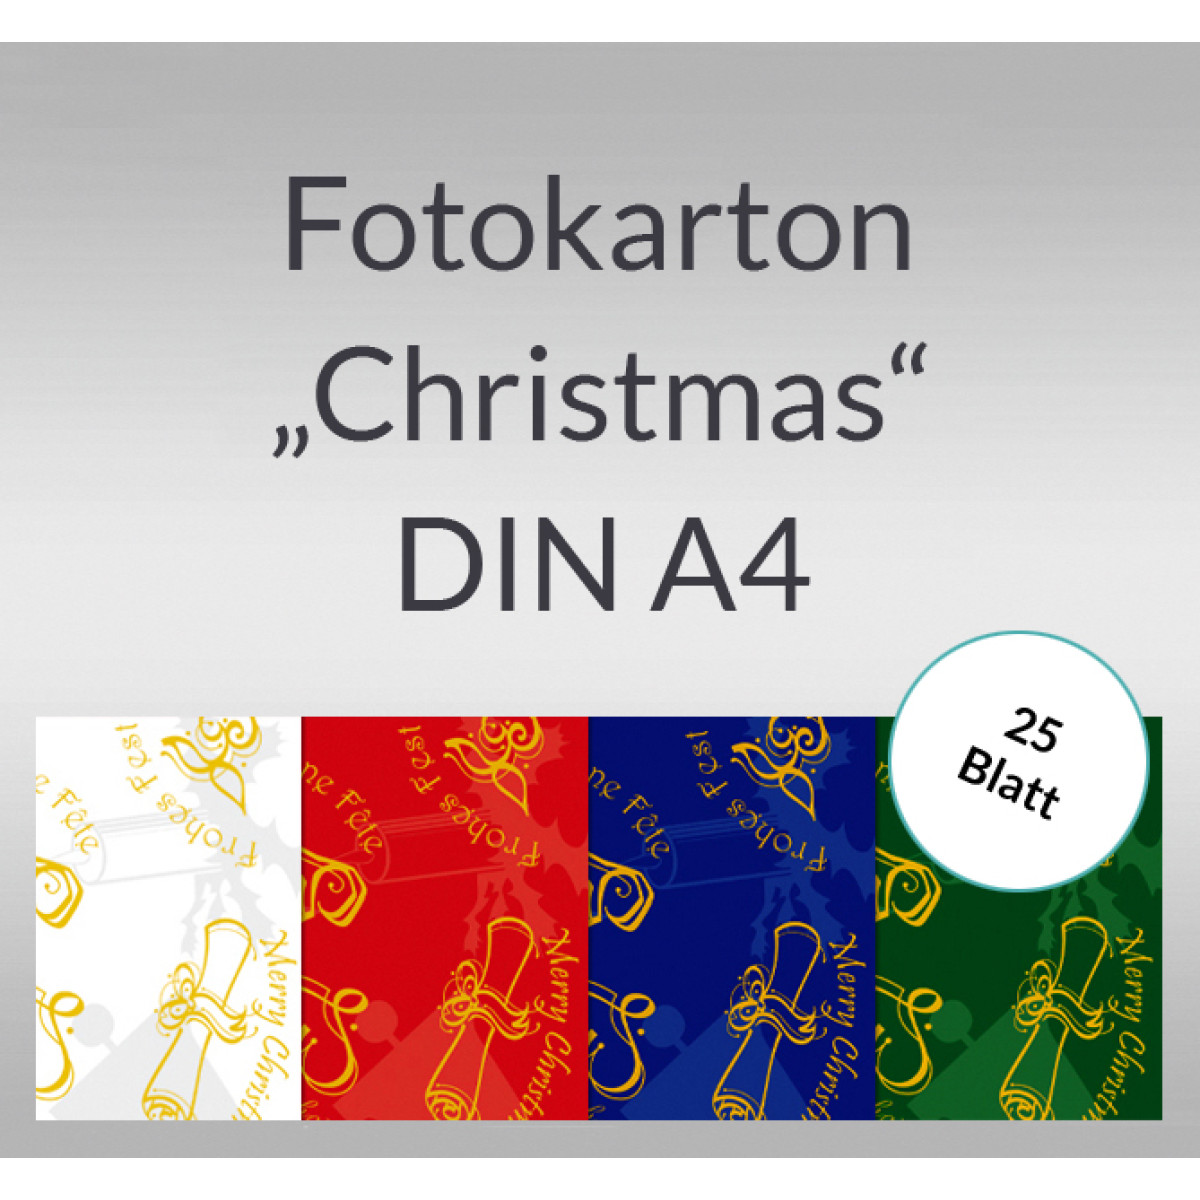 Fotokarton "Christmas" DIN A4 - 25 Blatt